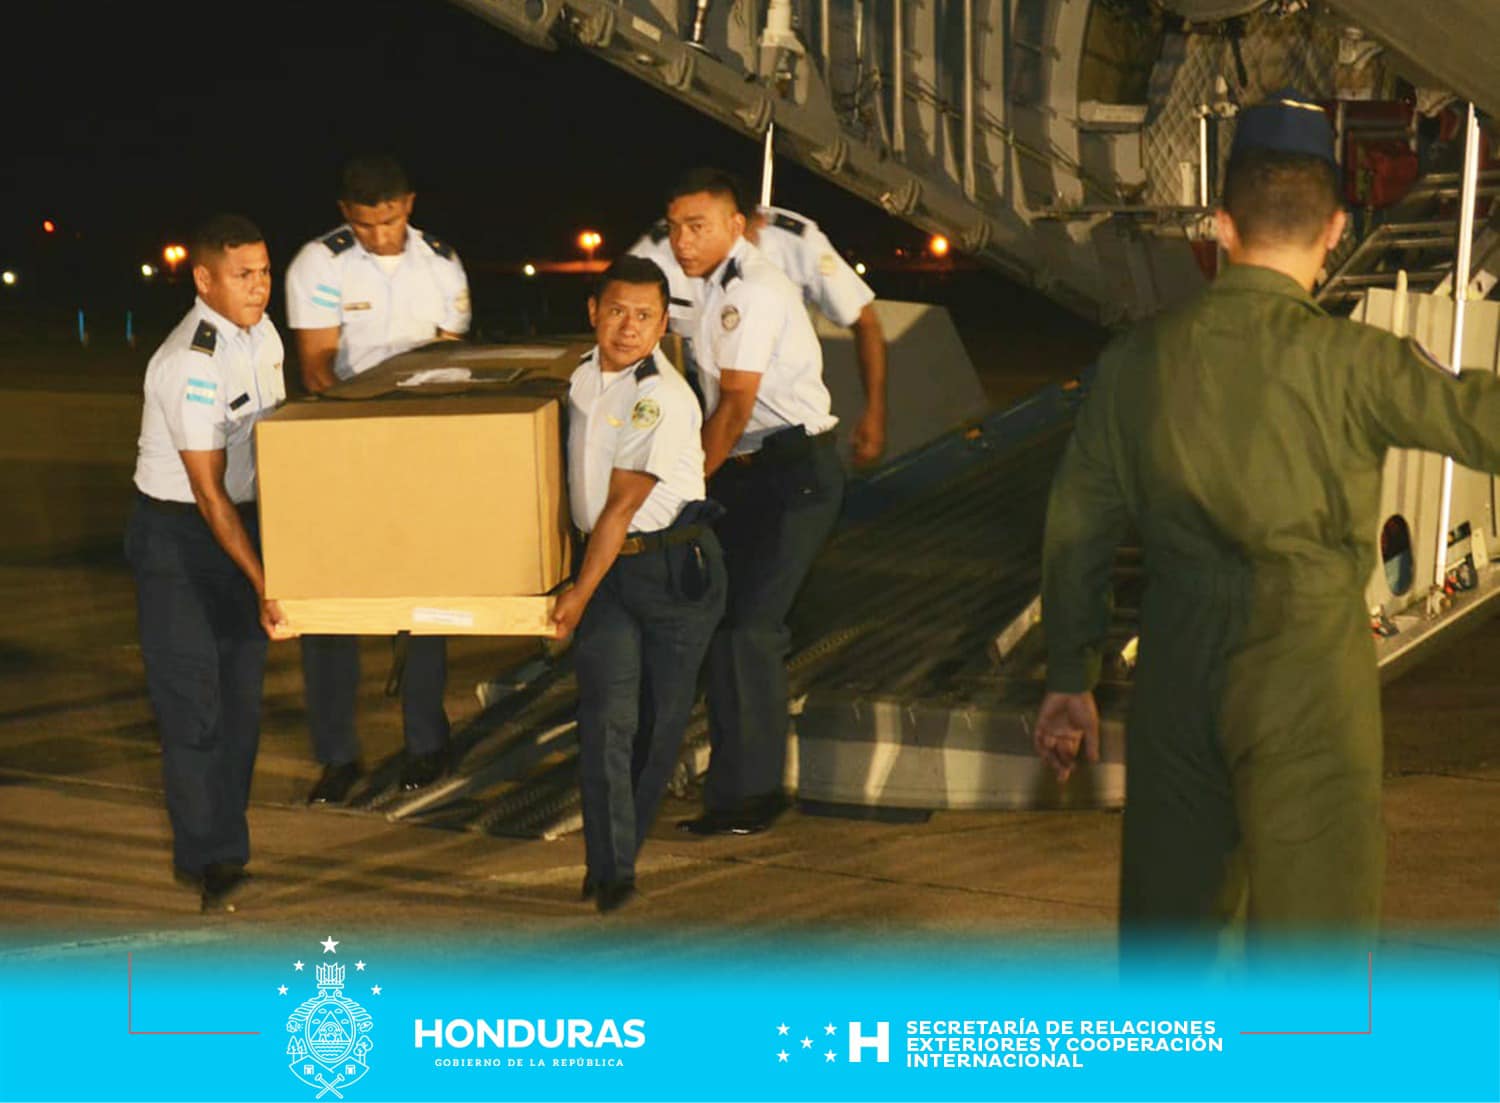 Los restos de los seis hondureños que perdieron la vida en México han sido entregados a sus familiares y lugares de origen gracias a la coordinación de la Cancillería hondureña